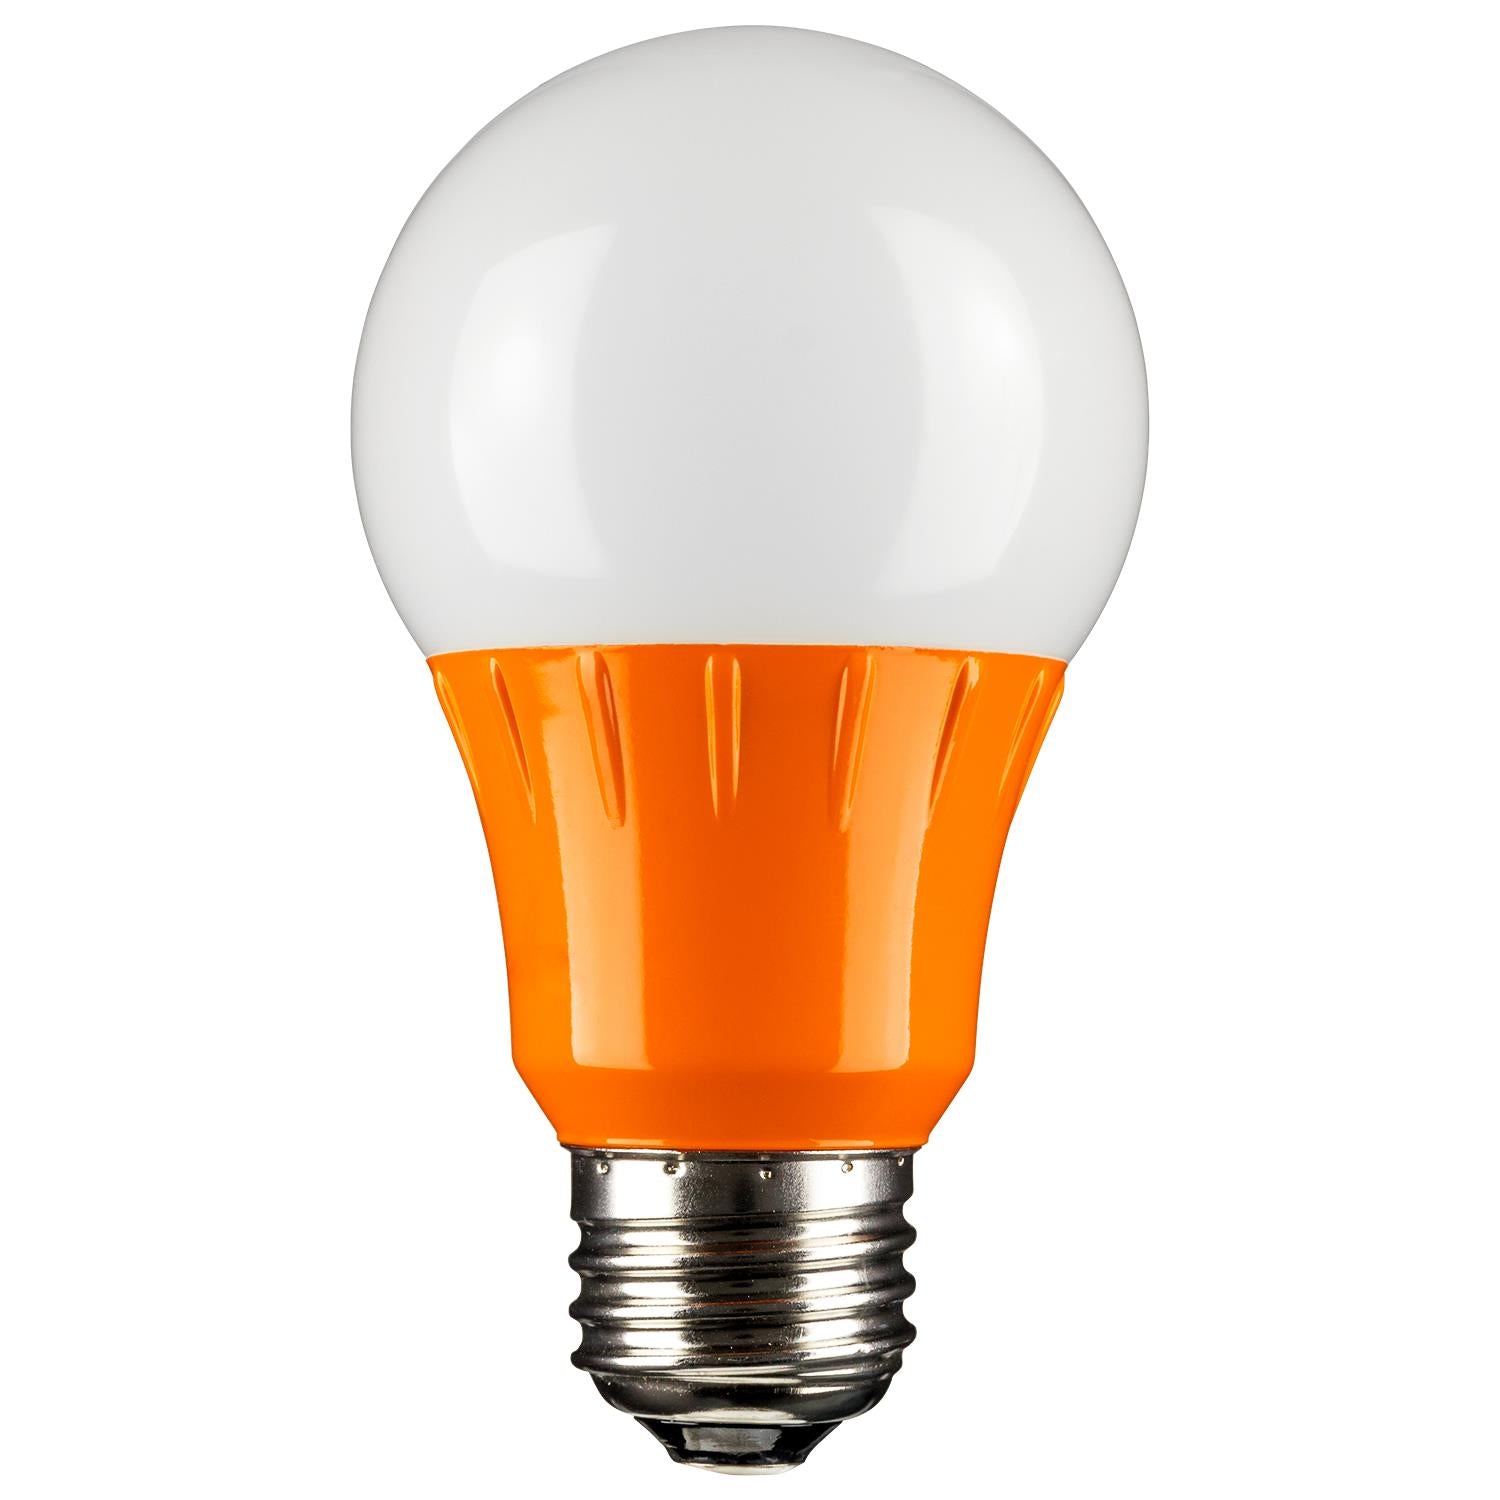 SUNLITE Orange LED A19 3w Medium (E26) Base Light Bulb - 80147-SU